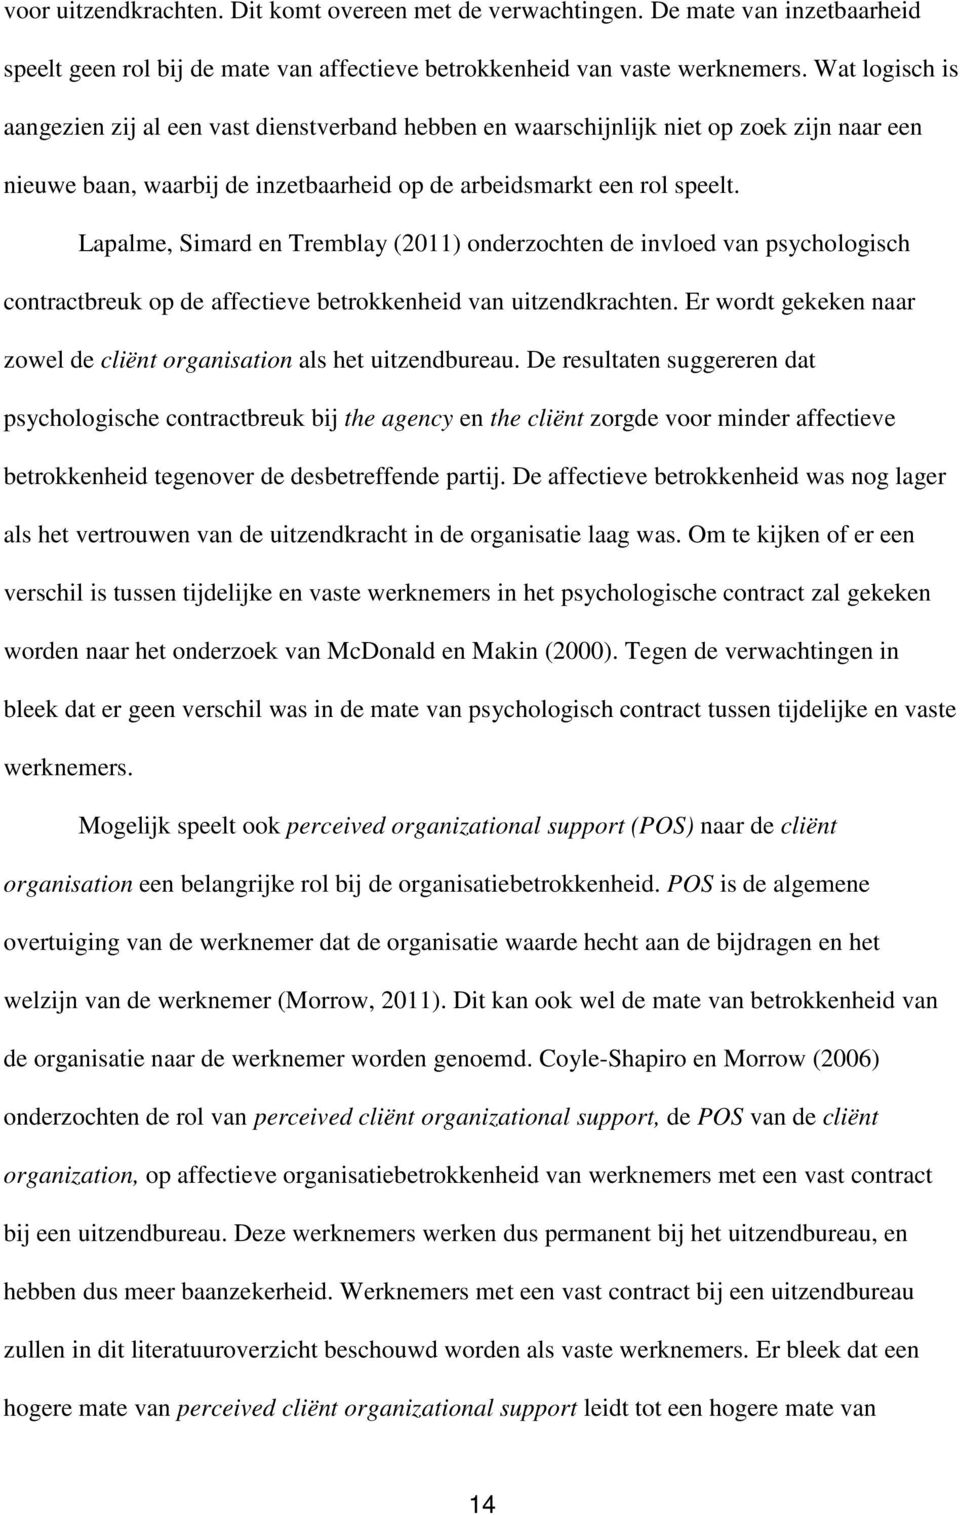 Lapalme, Simard en Tremblay (2011) onderzochten de invloed van psychologisch contractbreuk op de affectieve betrokkenheid van uitzendkrachten.